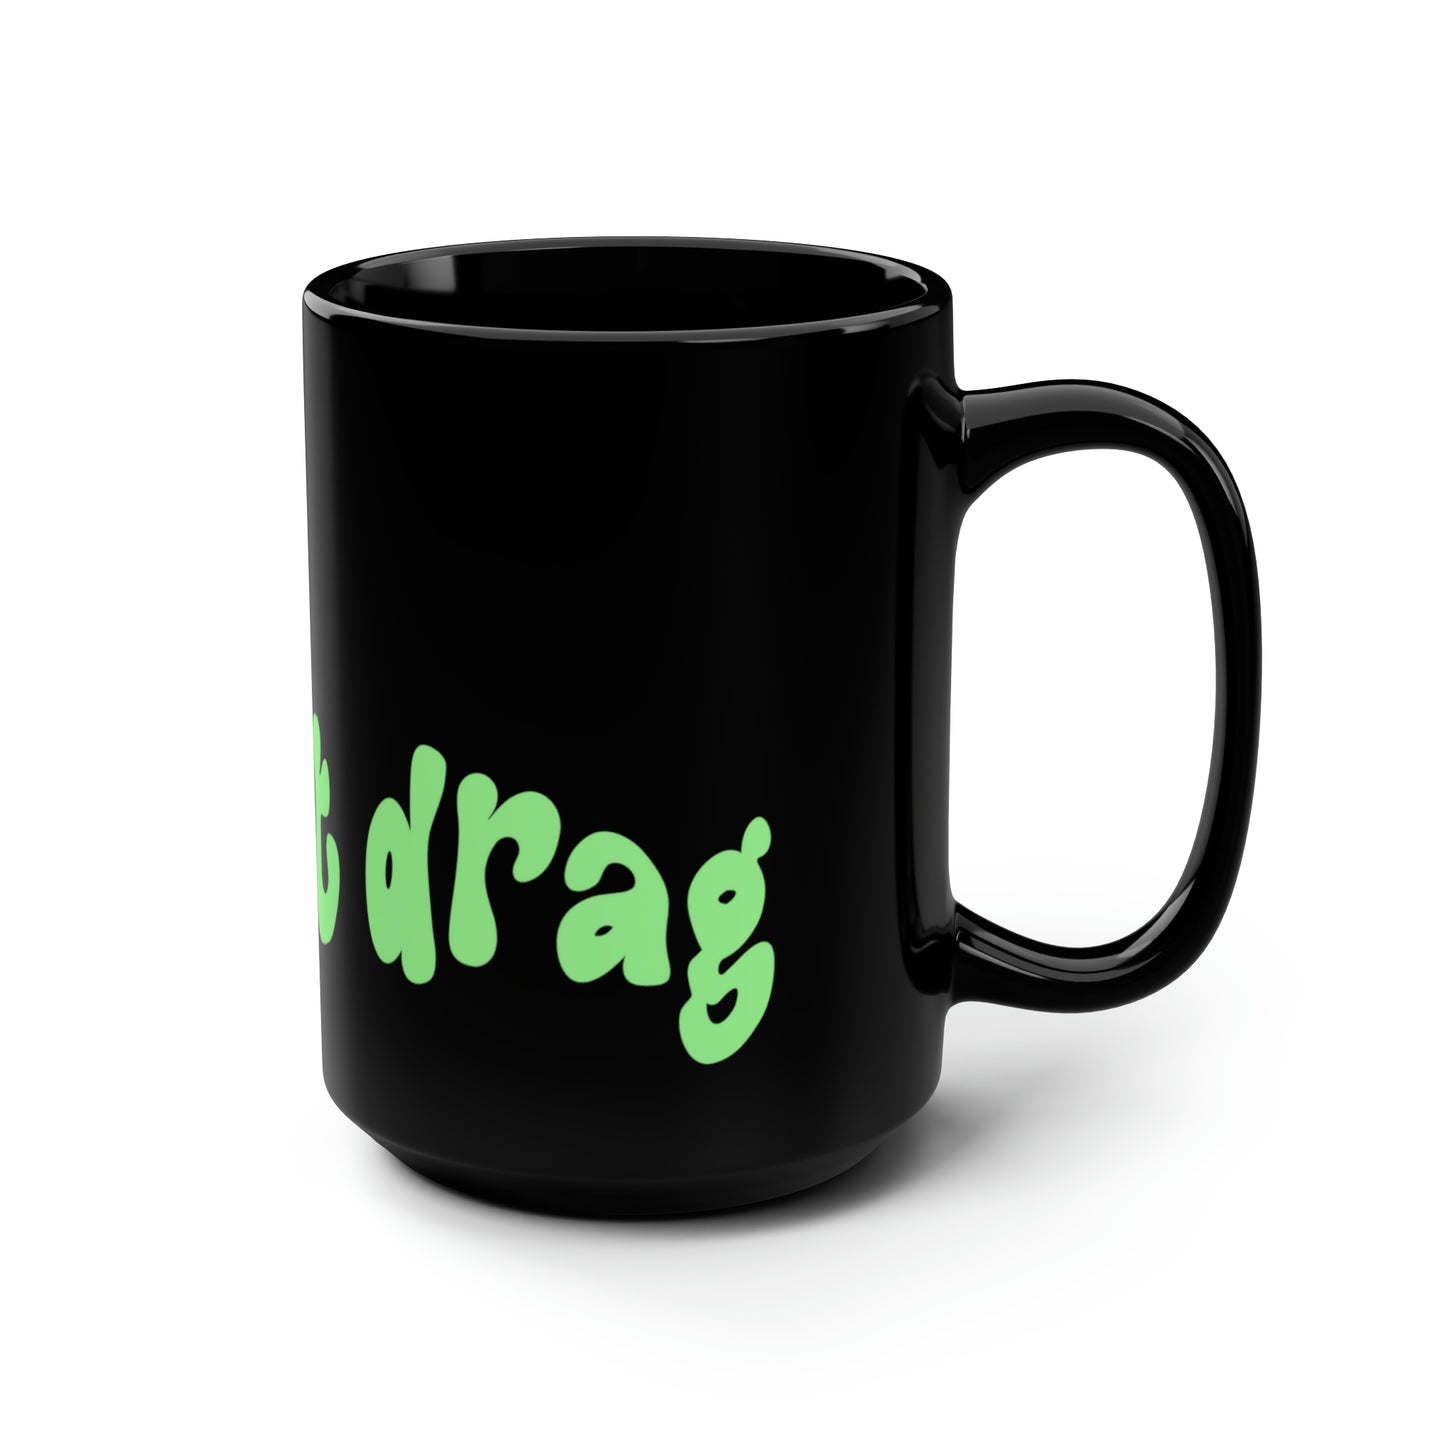 Protect Drag - Black Mug, 15oz